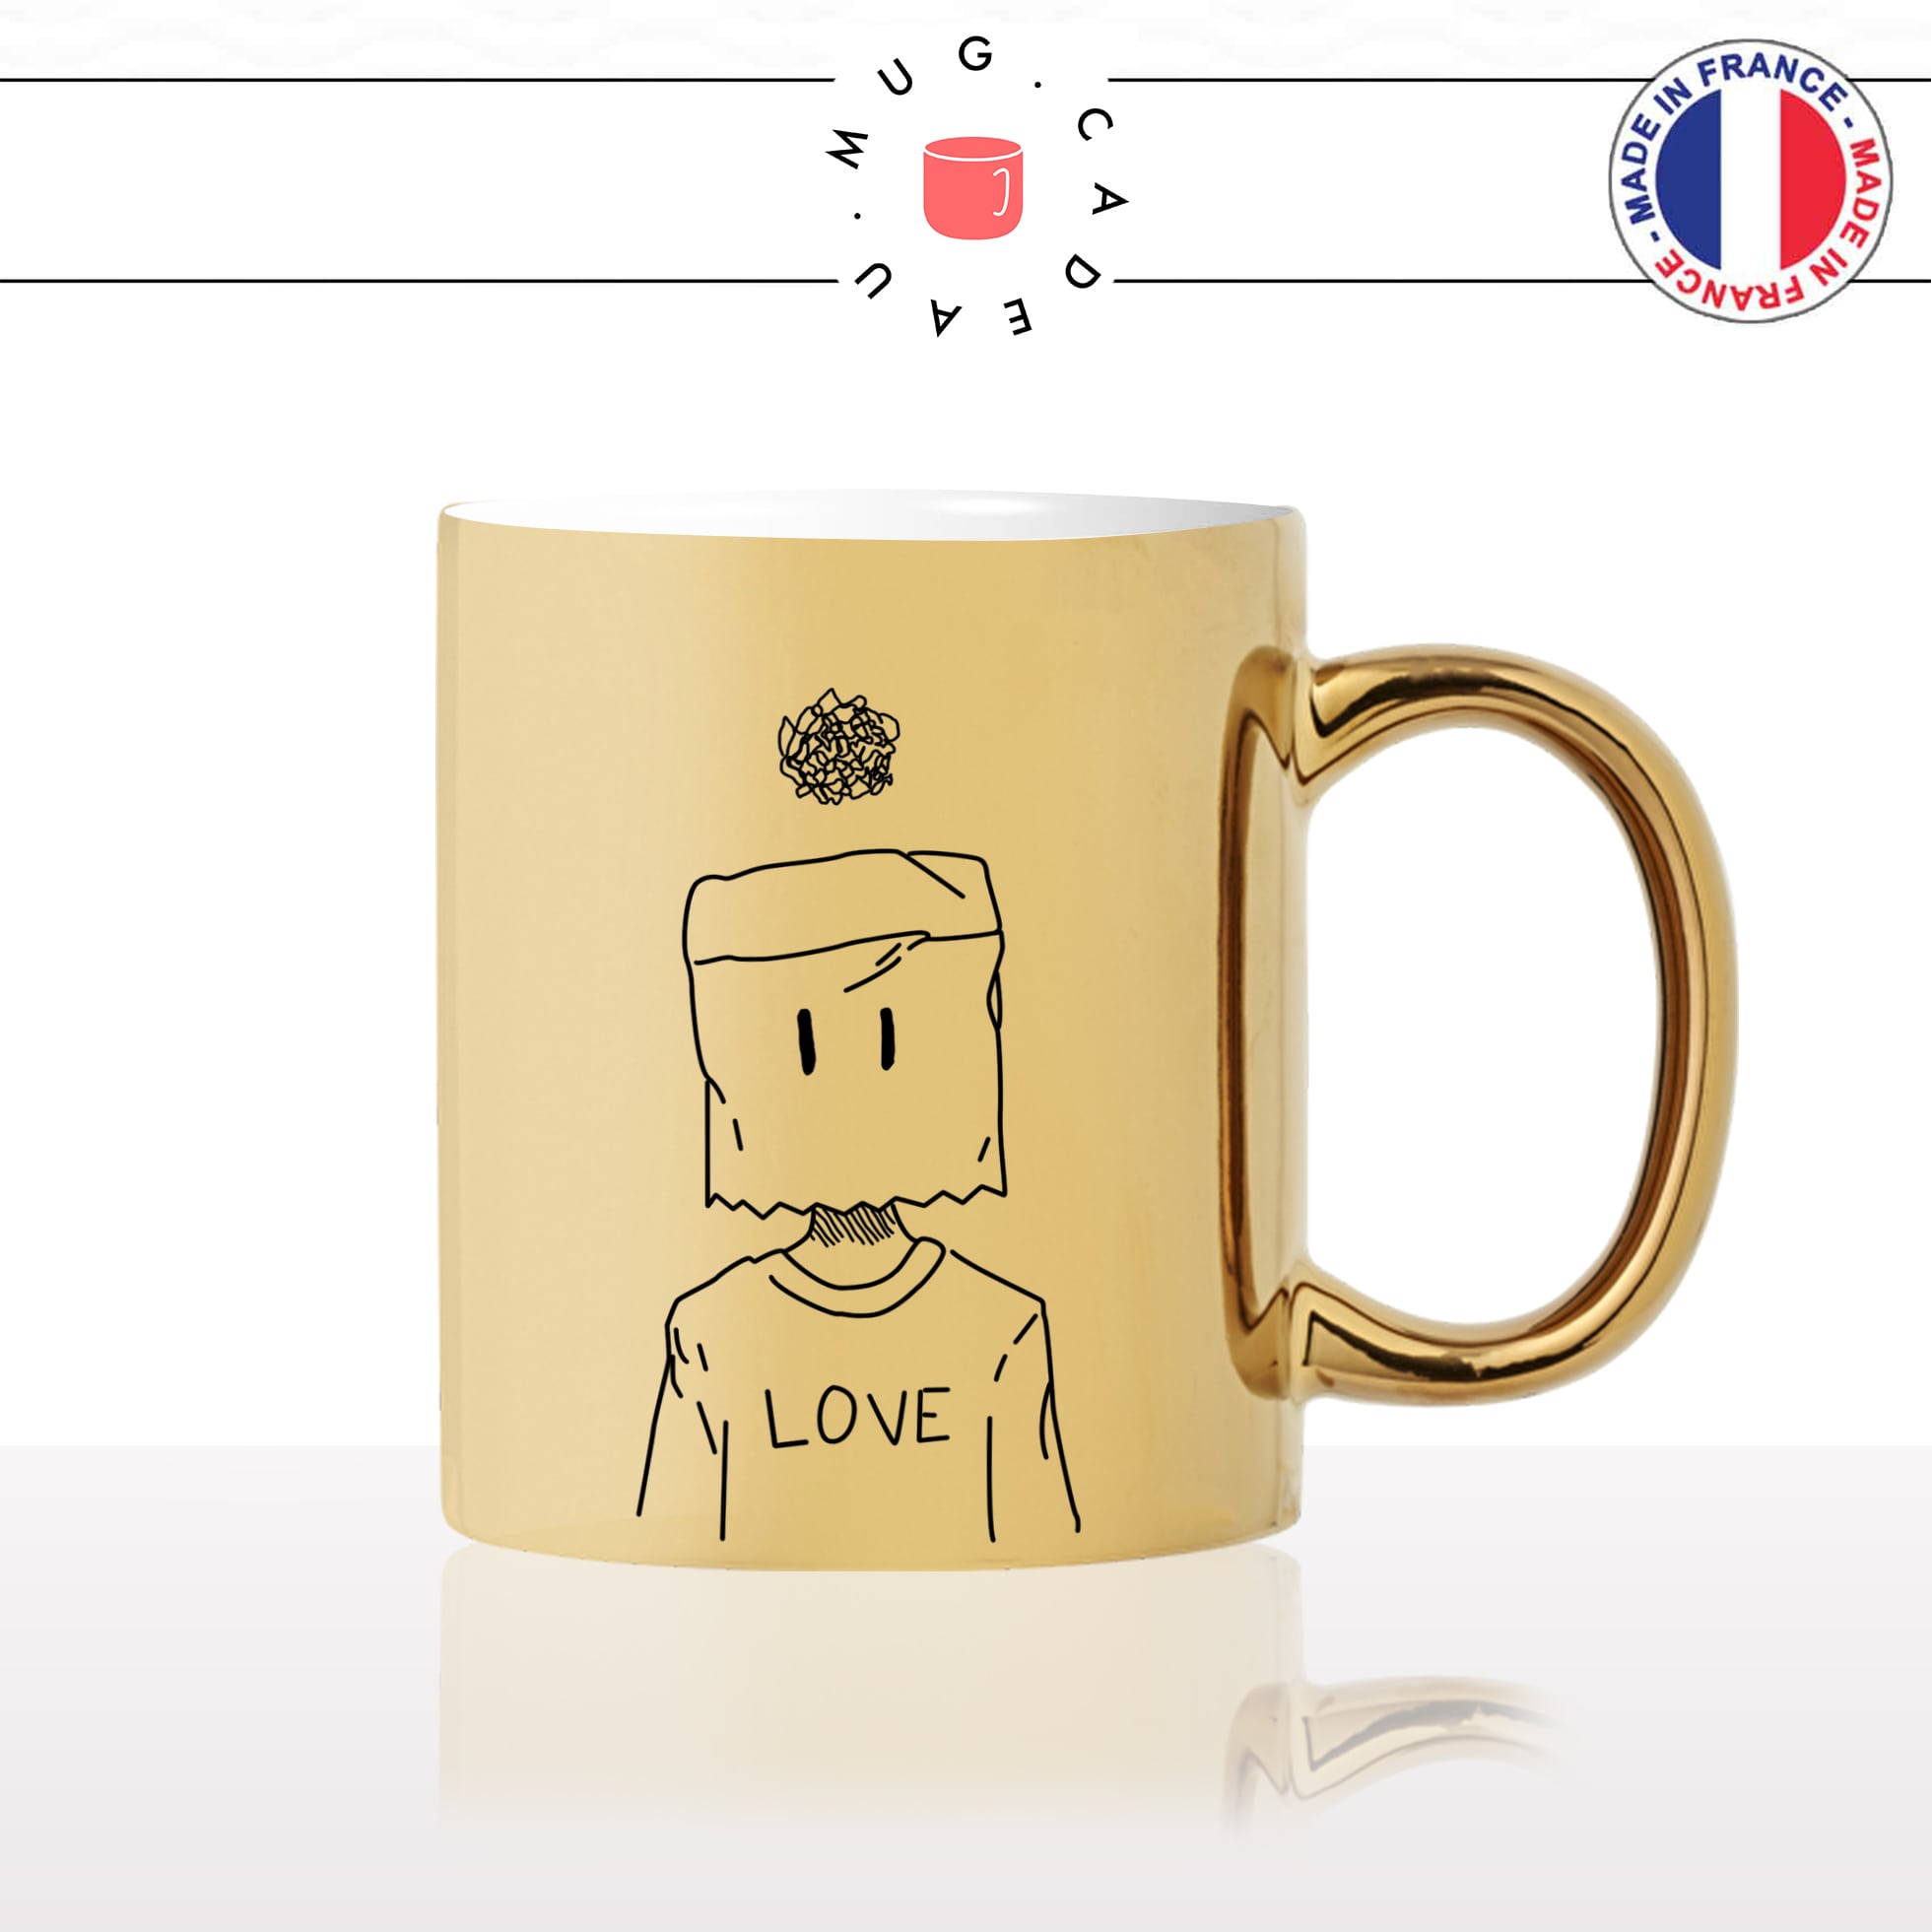 mug-tasse-or-doré-love-coeur-dessin-homme-amoureux-couple-st-valentin-amour-fun-café-thé-idée-cadeau-original-personnalisable-gold2-min